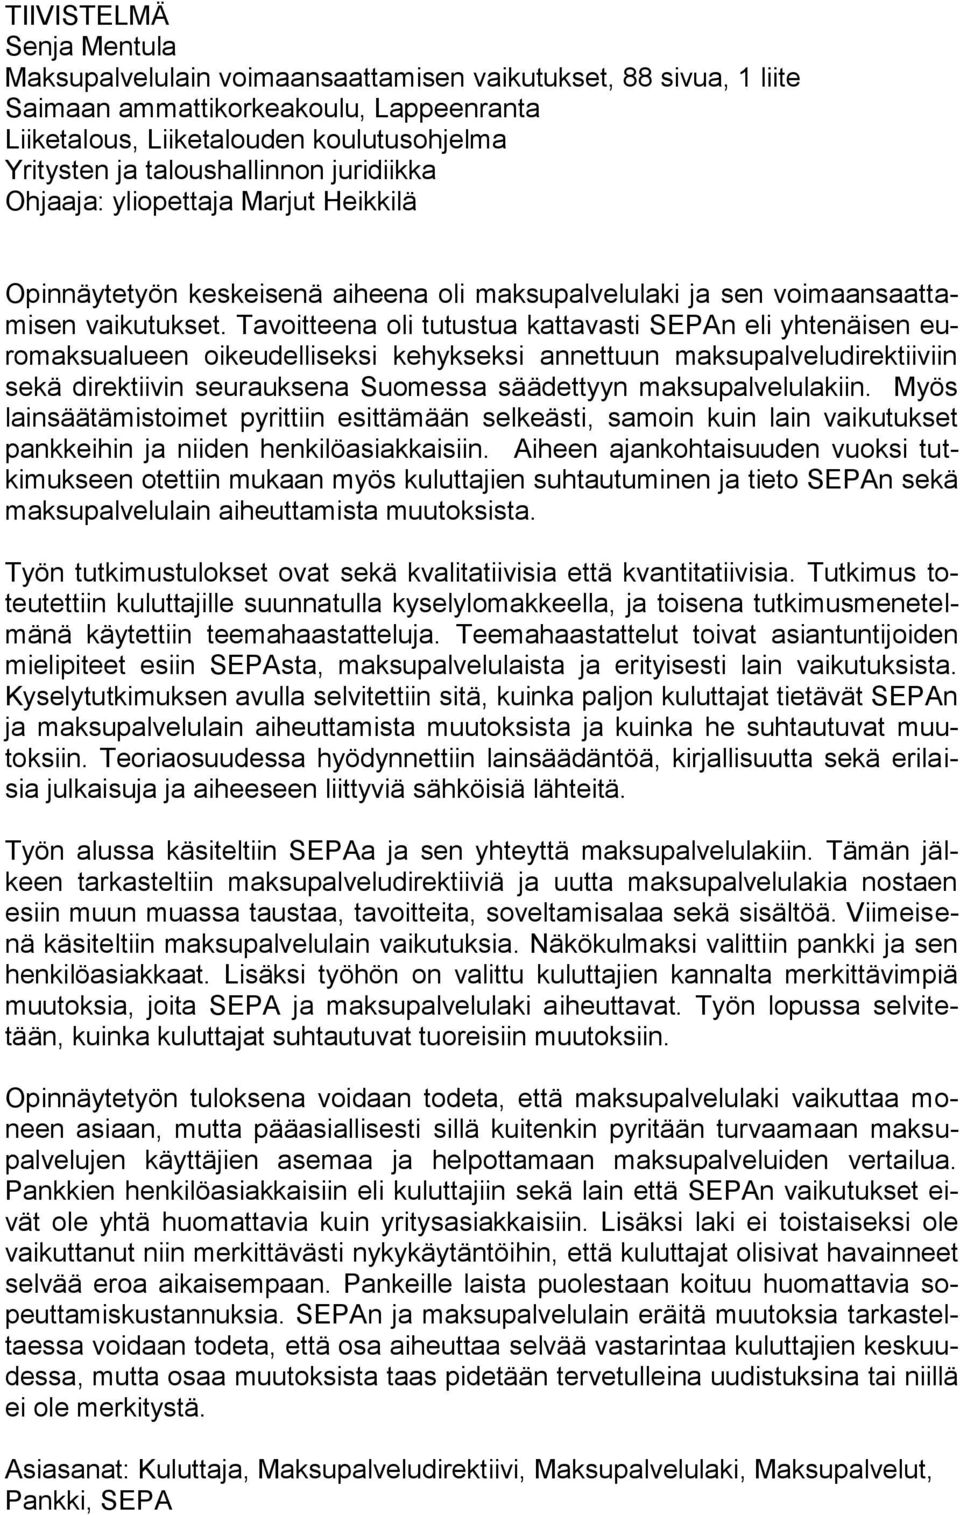 Tavoitteena oli tutustua kattavasti SEPAn eli yhtenäisen euromaksualueen oikeudelliseksi kehykseksi annettuun maksupalveludirektiiviin sekä direktiivin seurauksena Suomessa säädettyyn